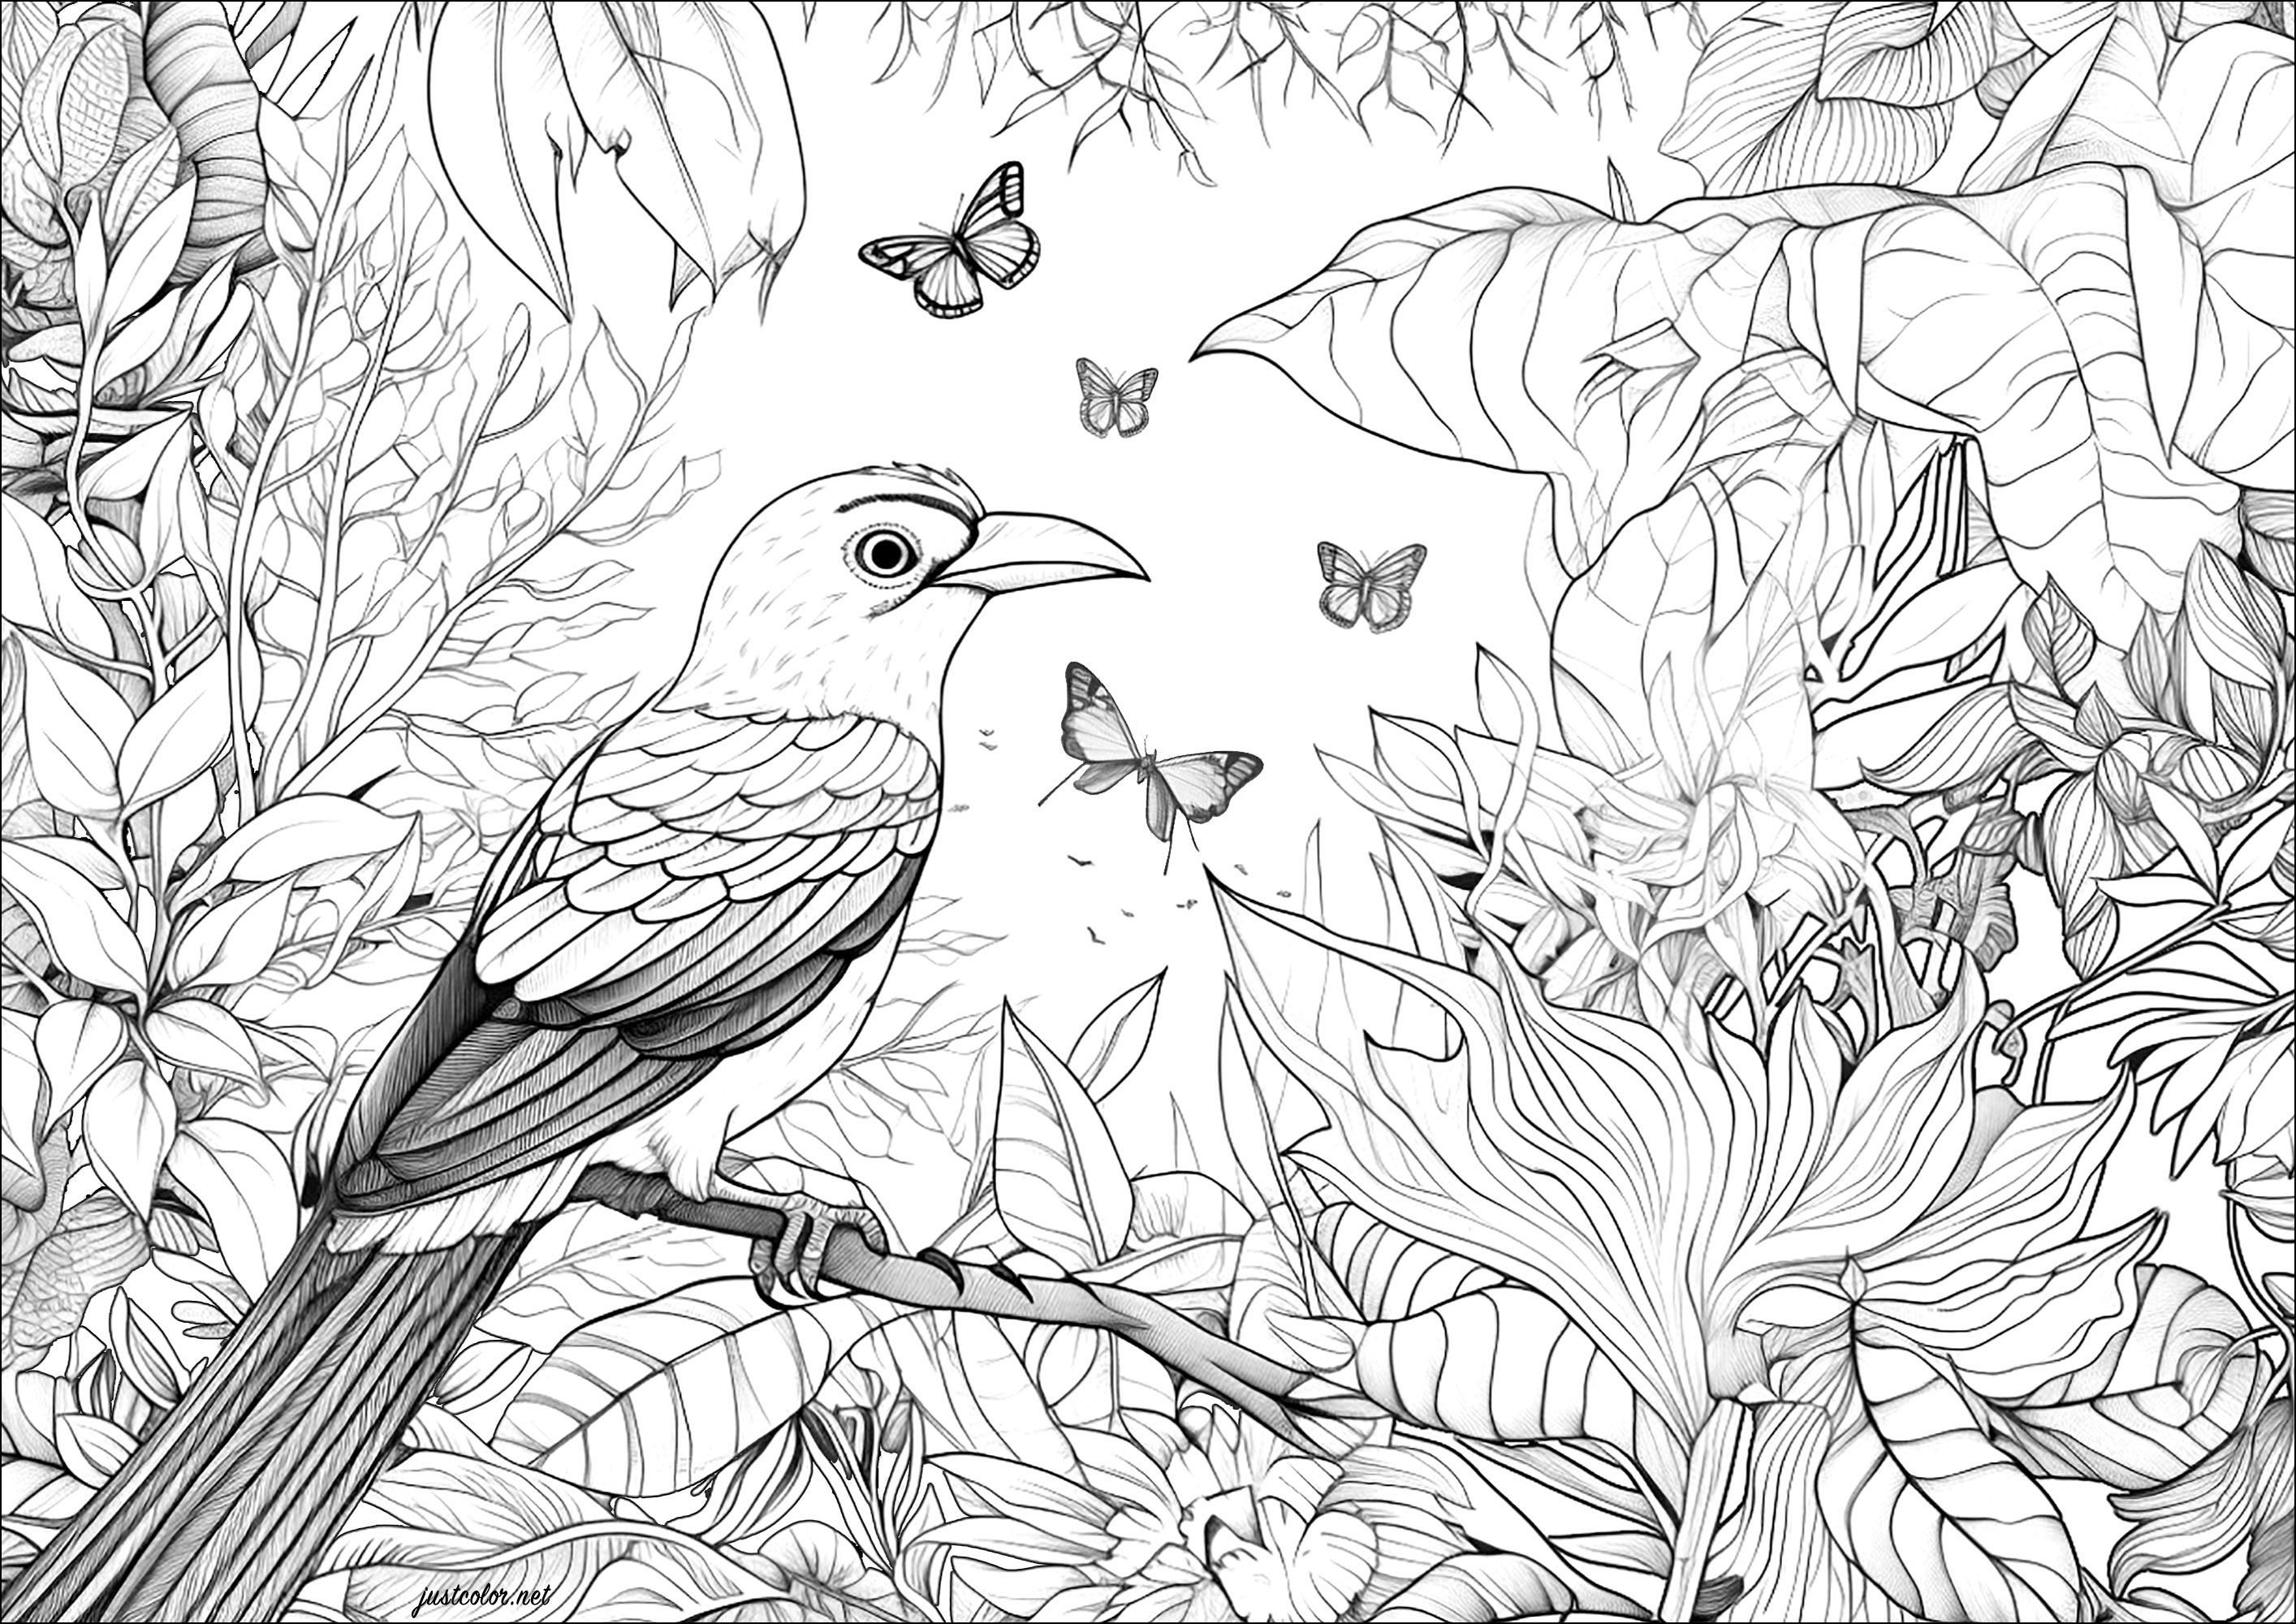 Oiseau tropical et papillons. Un coloriage plein de jolis détails